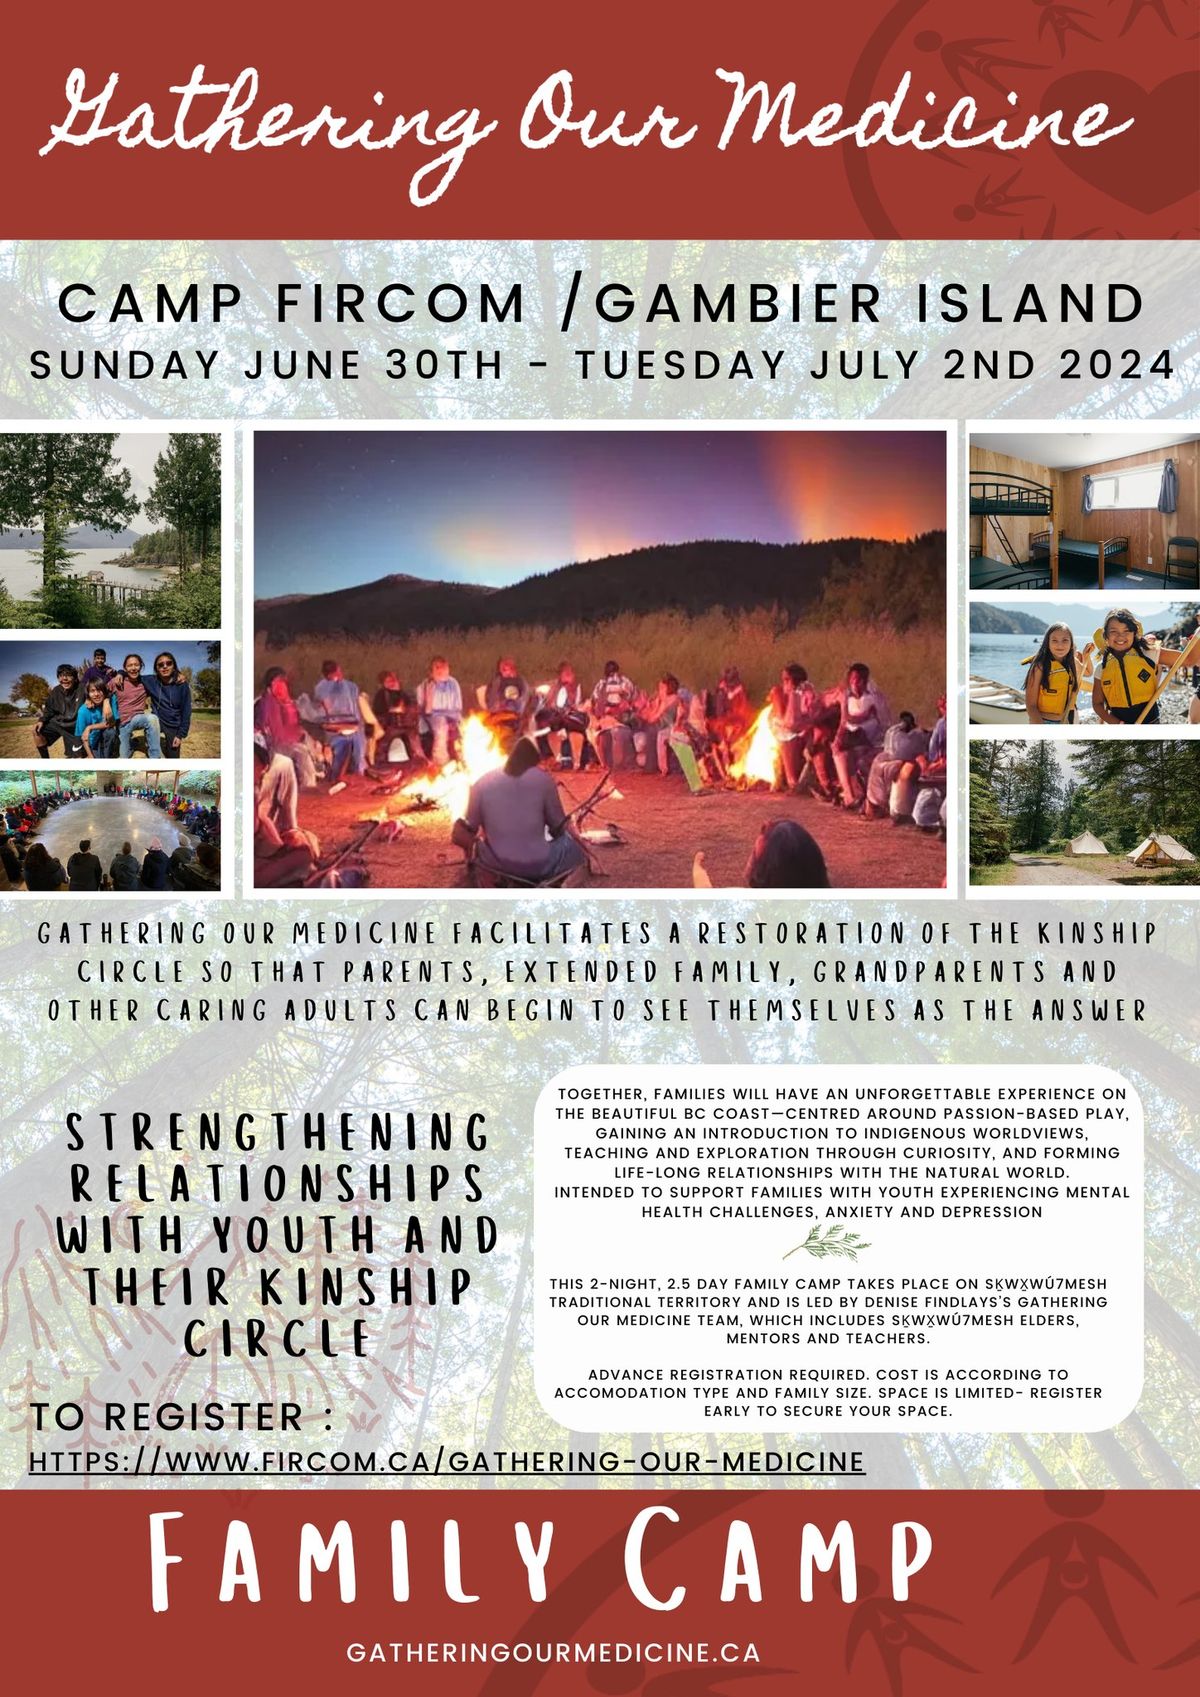 Family Camp @ FIrcom